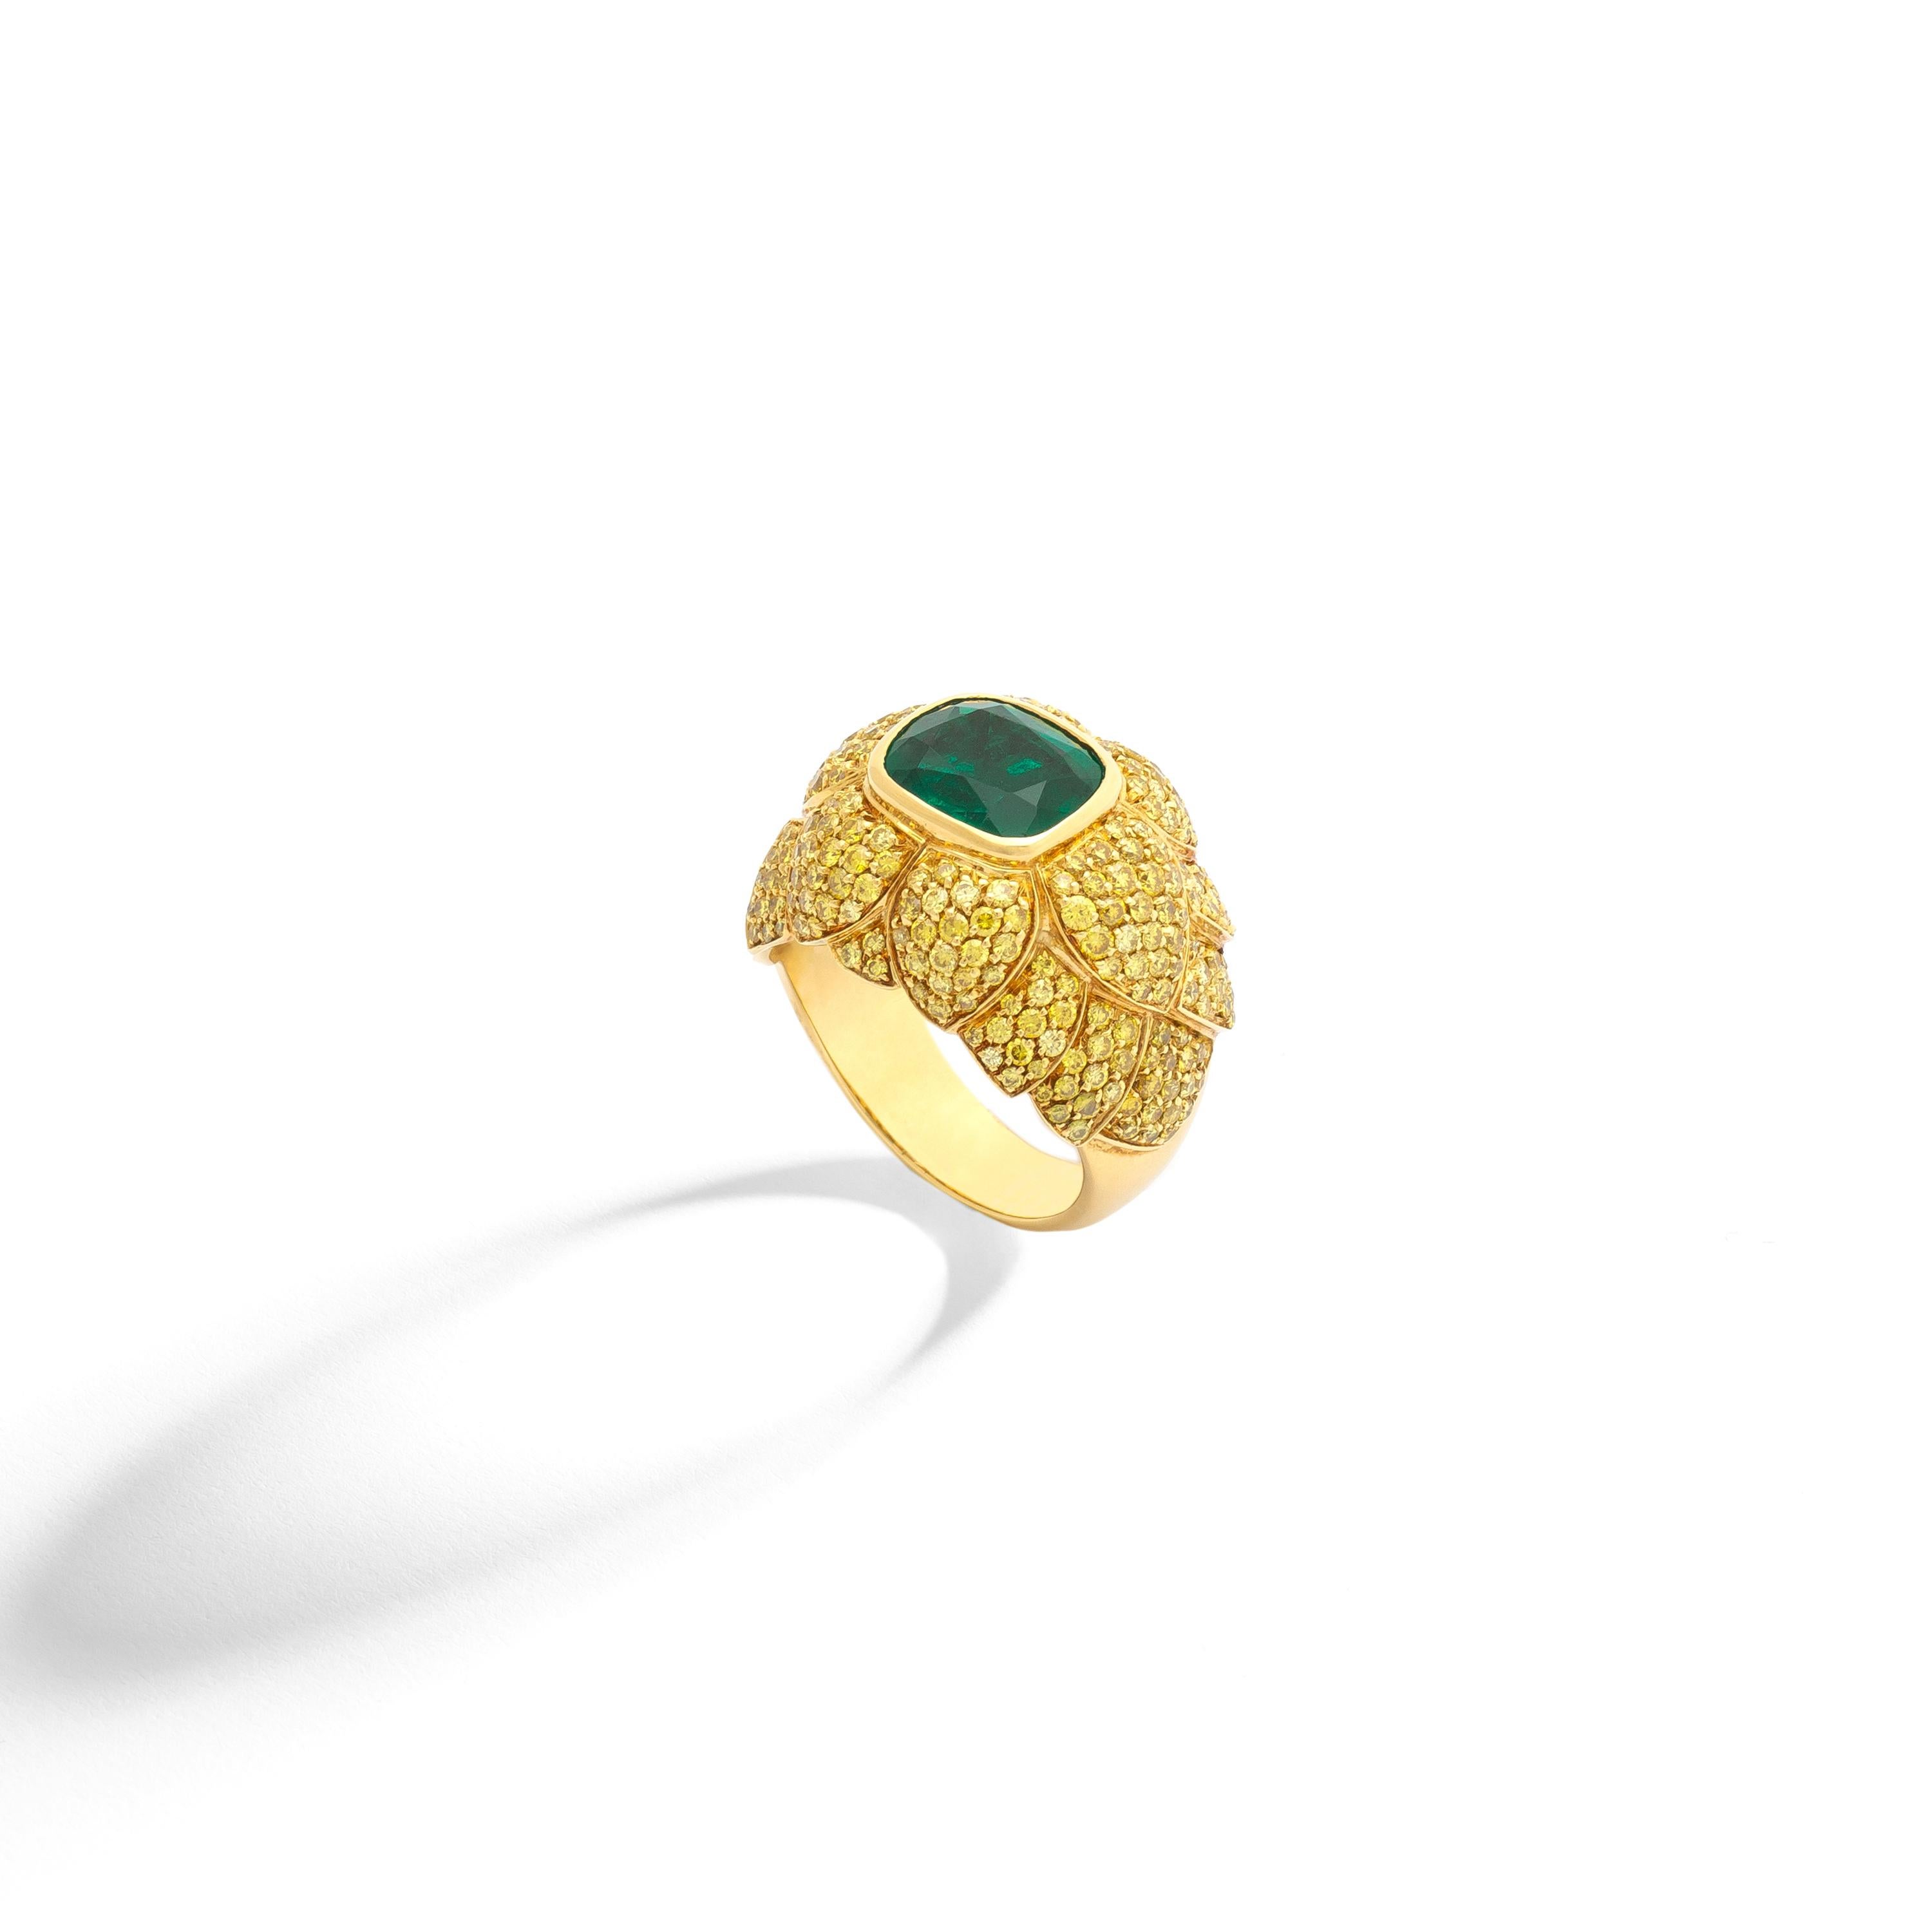 Gelbgold 18k Ring von gelben Diamanten 1,91 Karat und durch eine 2,47 Karat Smaragd zentriert gesetzt.

